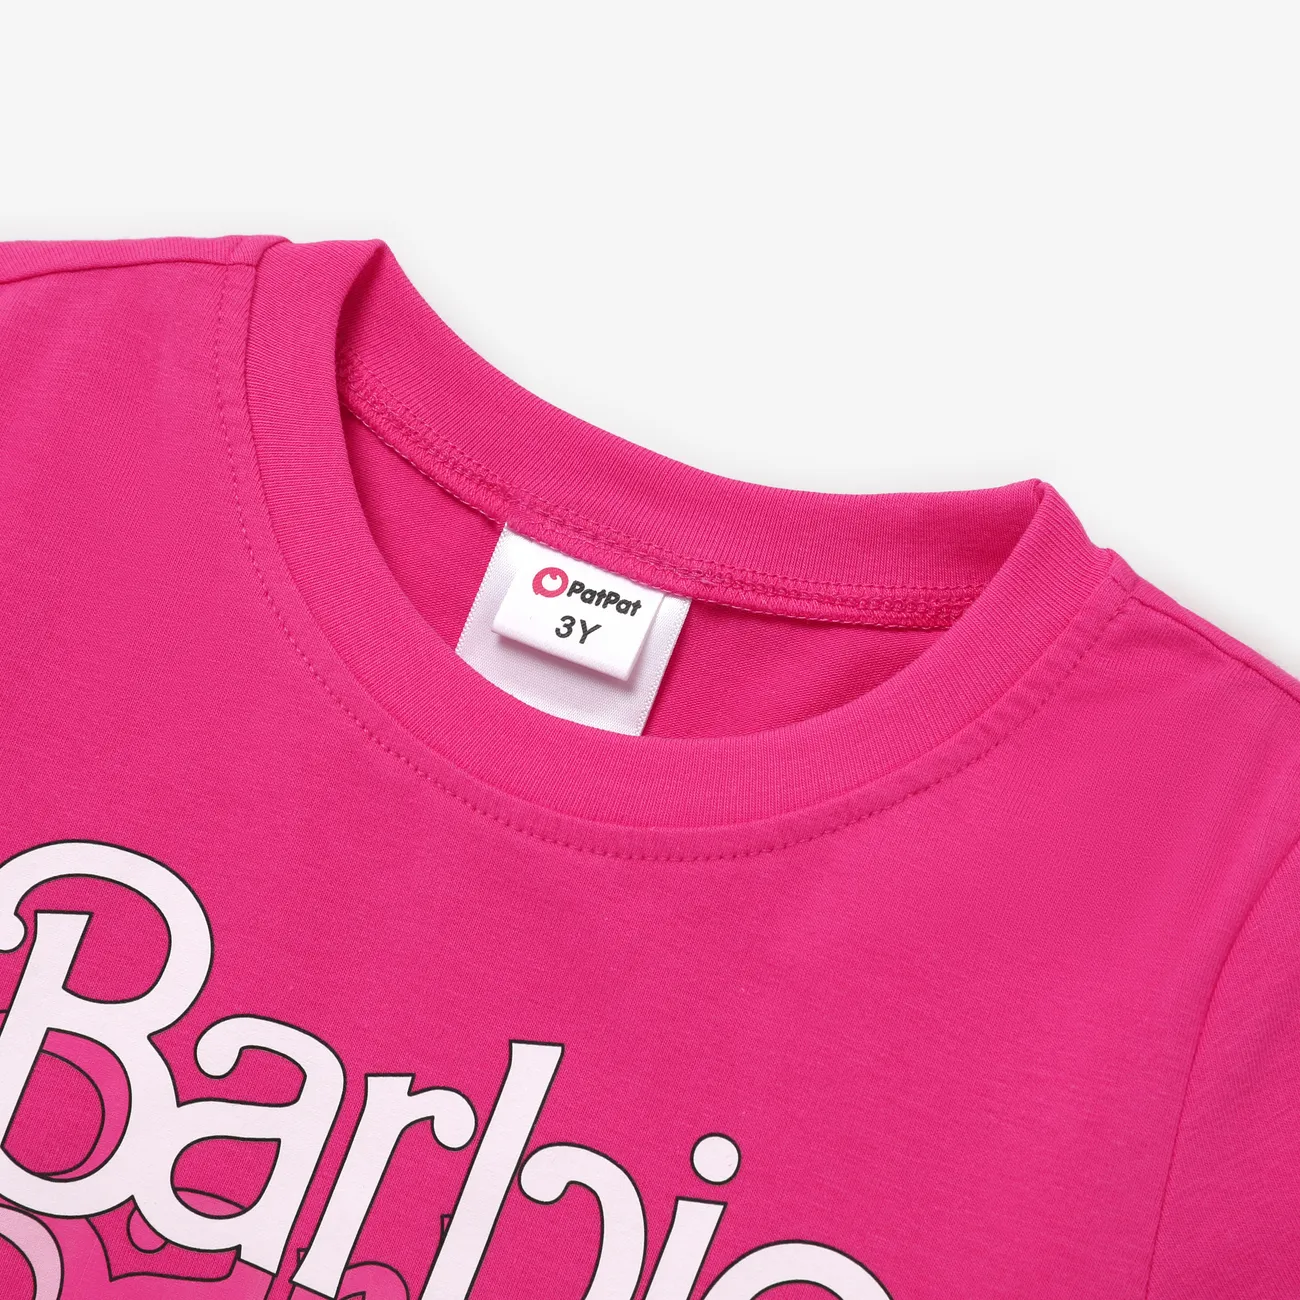 Barbie Fille Enfantin T-Shirt roseo big image 1